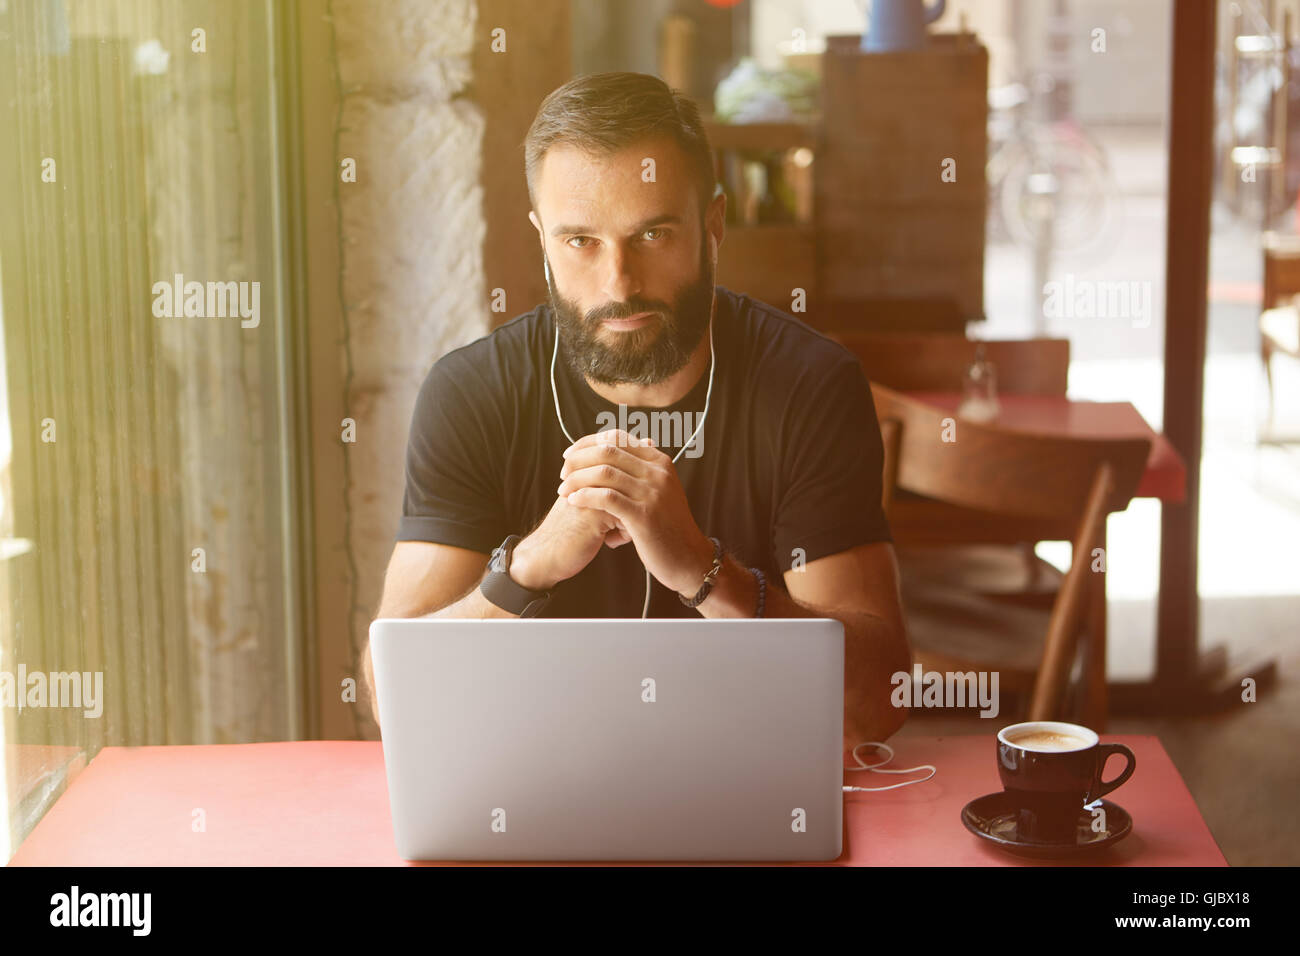 Junge Bearded Geschäftsmann tragen schwarz Tshirt arbeiten Laptop Urban Cafe.Man sitzen Holz Tisch Tasse Kaffee hören Music.Coworking Prozess Business Startup.Blurred Background.Sunlight Wirkung. Stockfoto